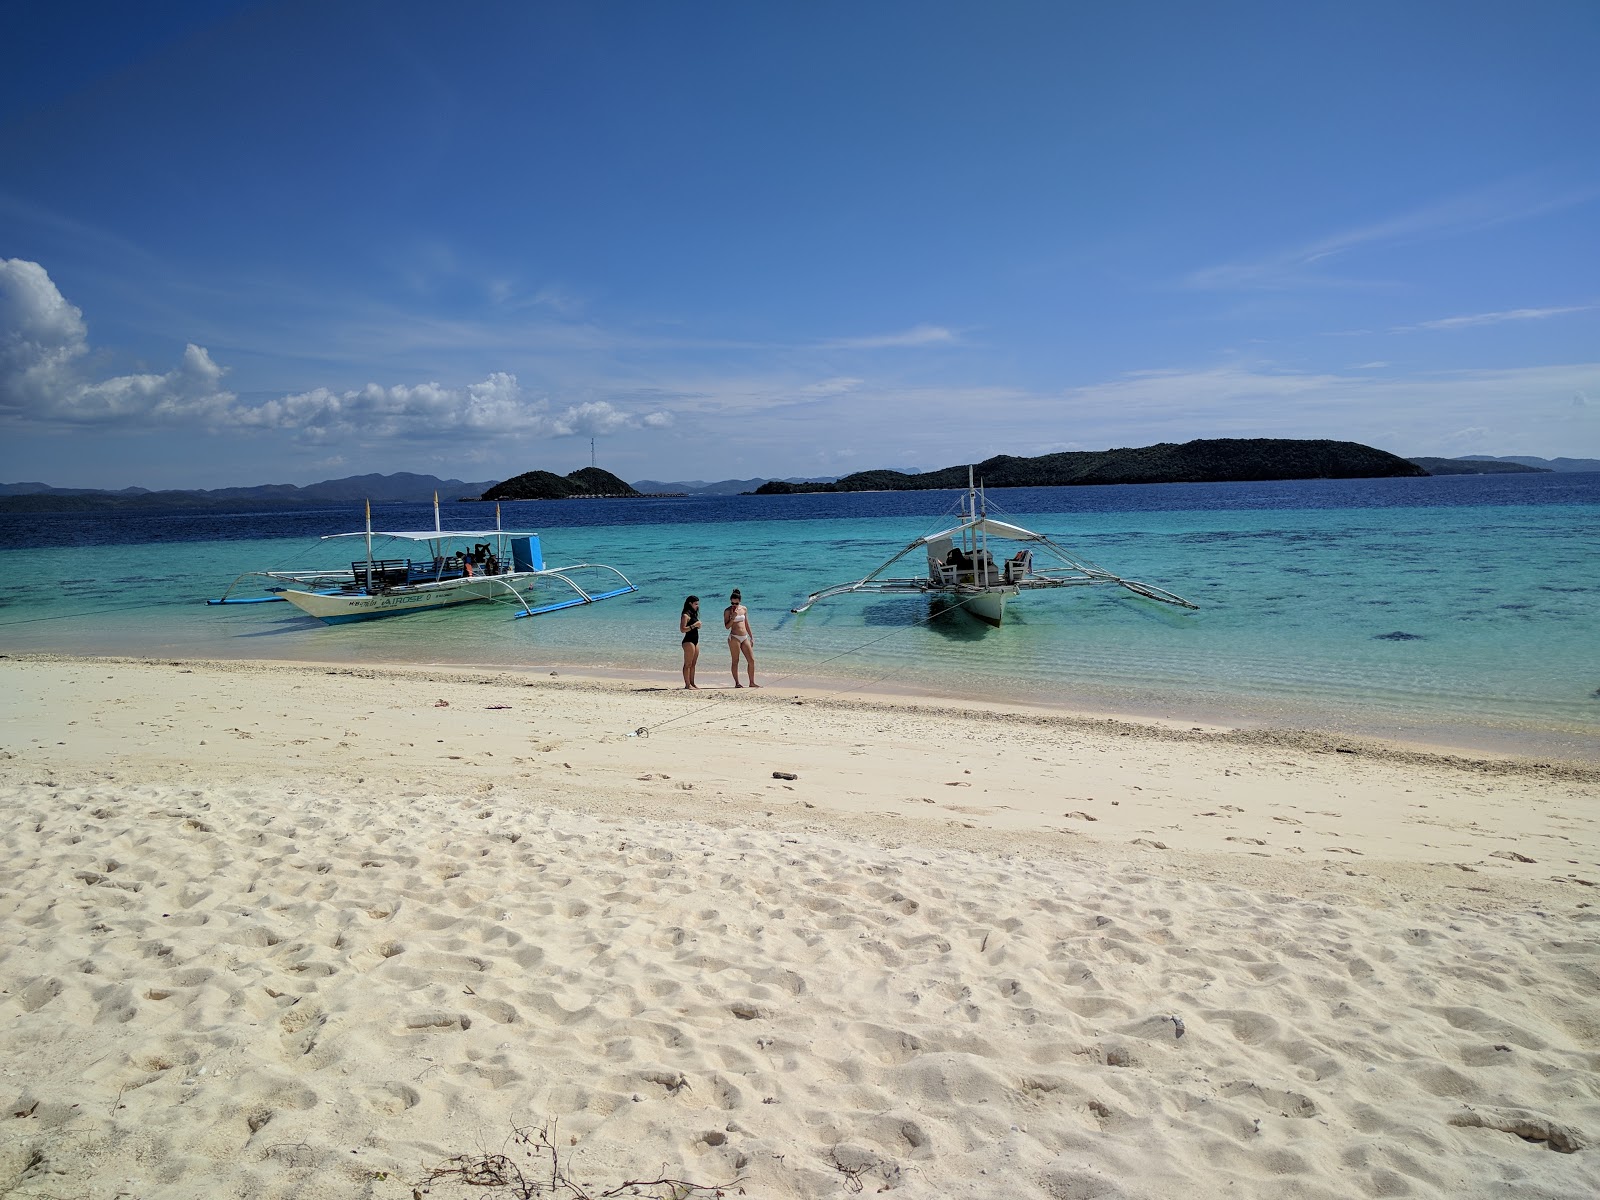 Fotografie cu Nagbinet Island cu o suprafață de nisip alb